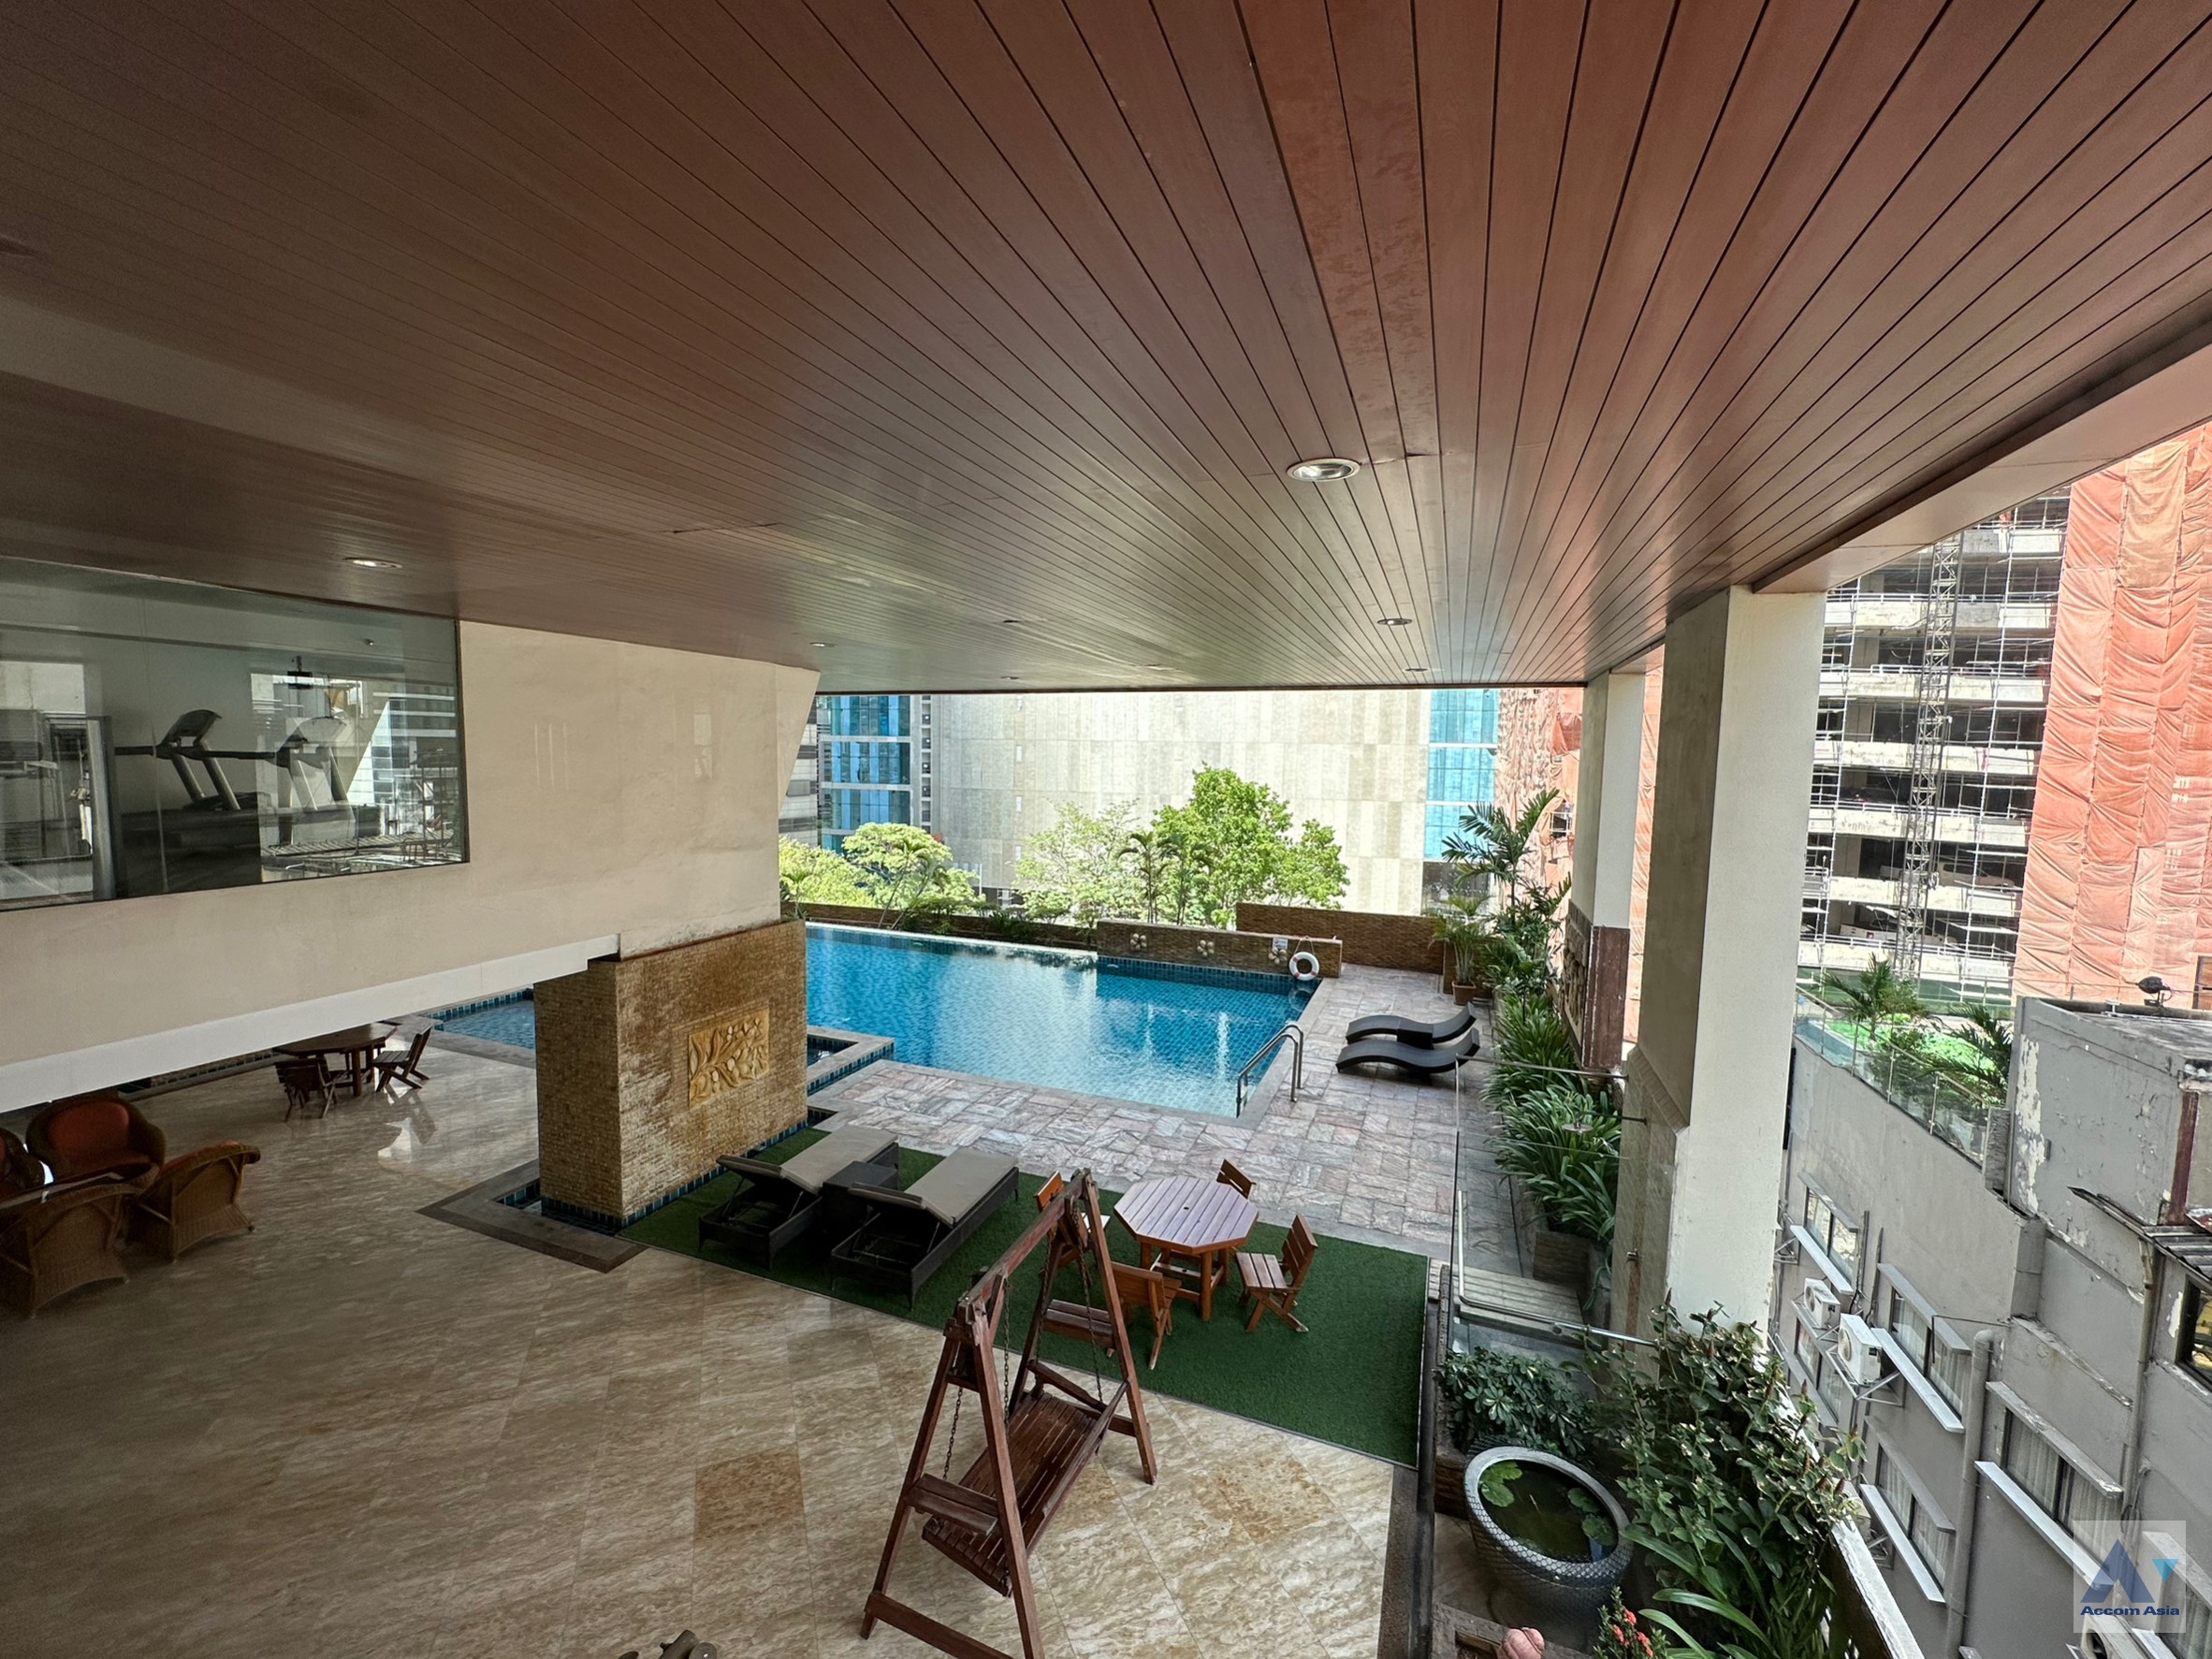 4 High-quality facility - Apartment - Sukhumvit - Bangkok / Accomasia